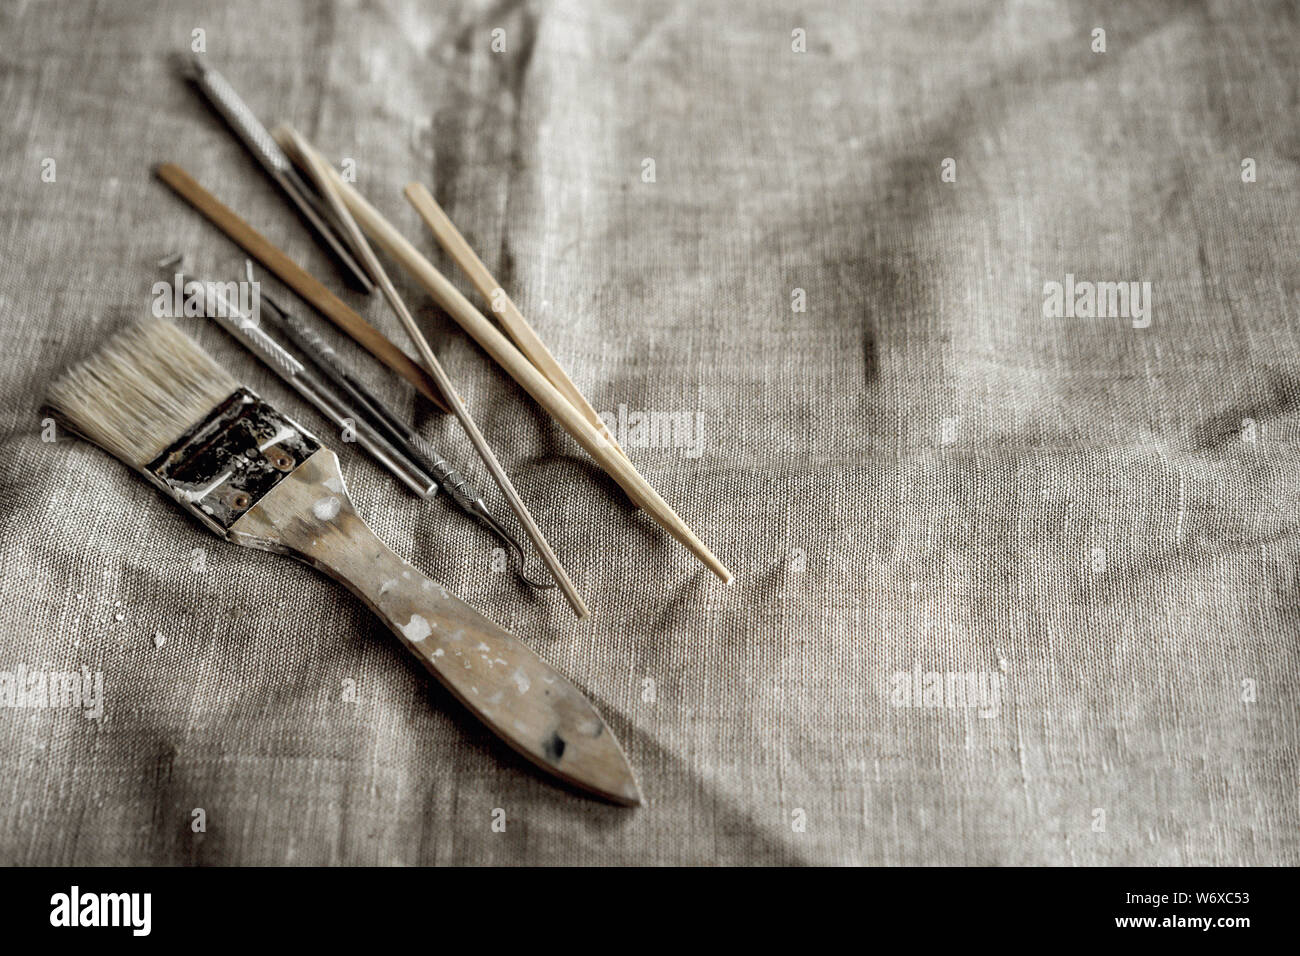 Herramientas de arcilla gris sobre lienzo. Cepillo, palos de madera, pilas, espátulas metálicas Foto de stock